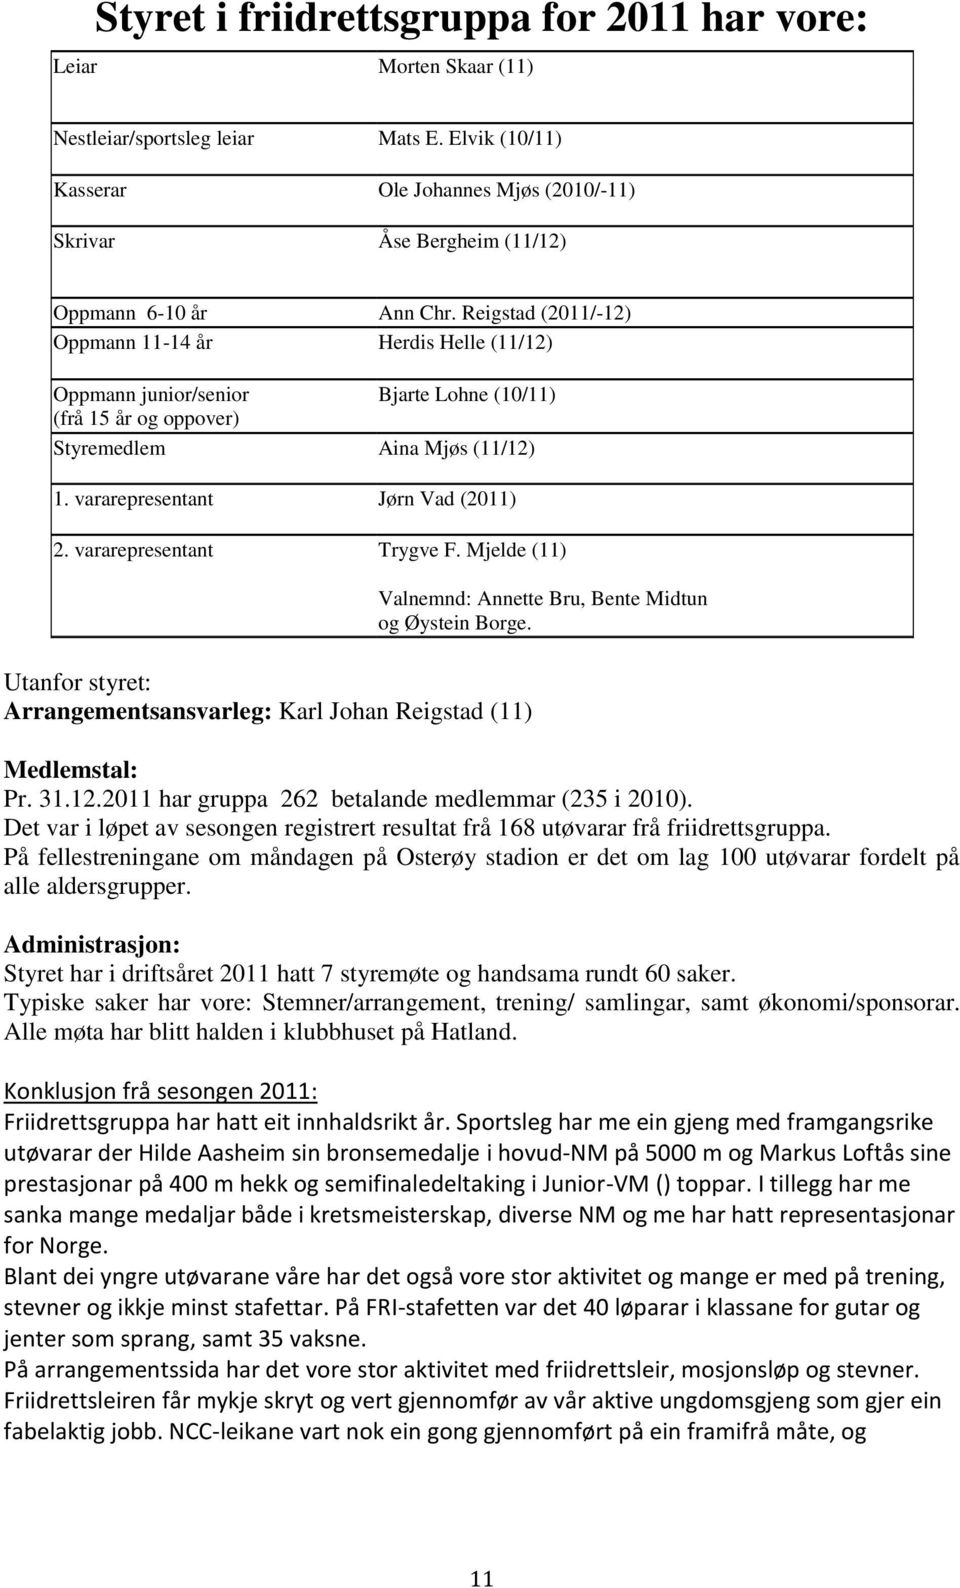 Reigstad (2011/-12) Oppmann 11-14 år Herdis Helle (11/12) Oppmann junior/senior Bjarte Lohne (10/11) (frå 15 år og oppover) Styremedlem Aina Mjøs (11/12) 1. vararepresentant Jørn Vad (2011) 2.